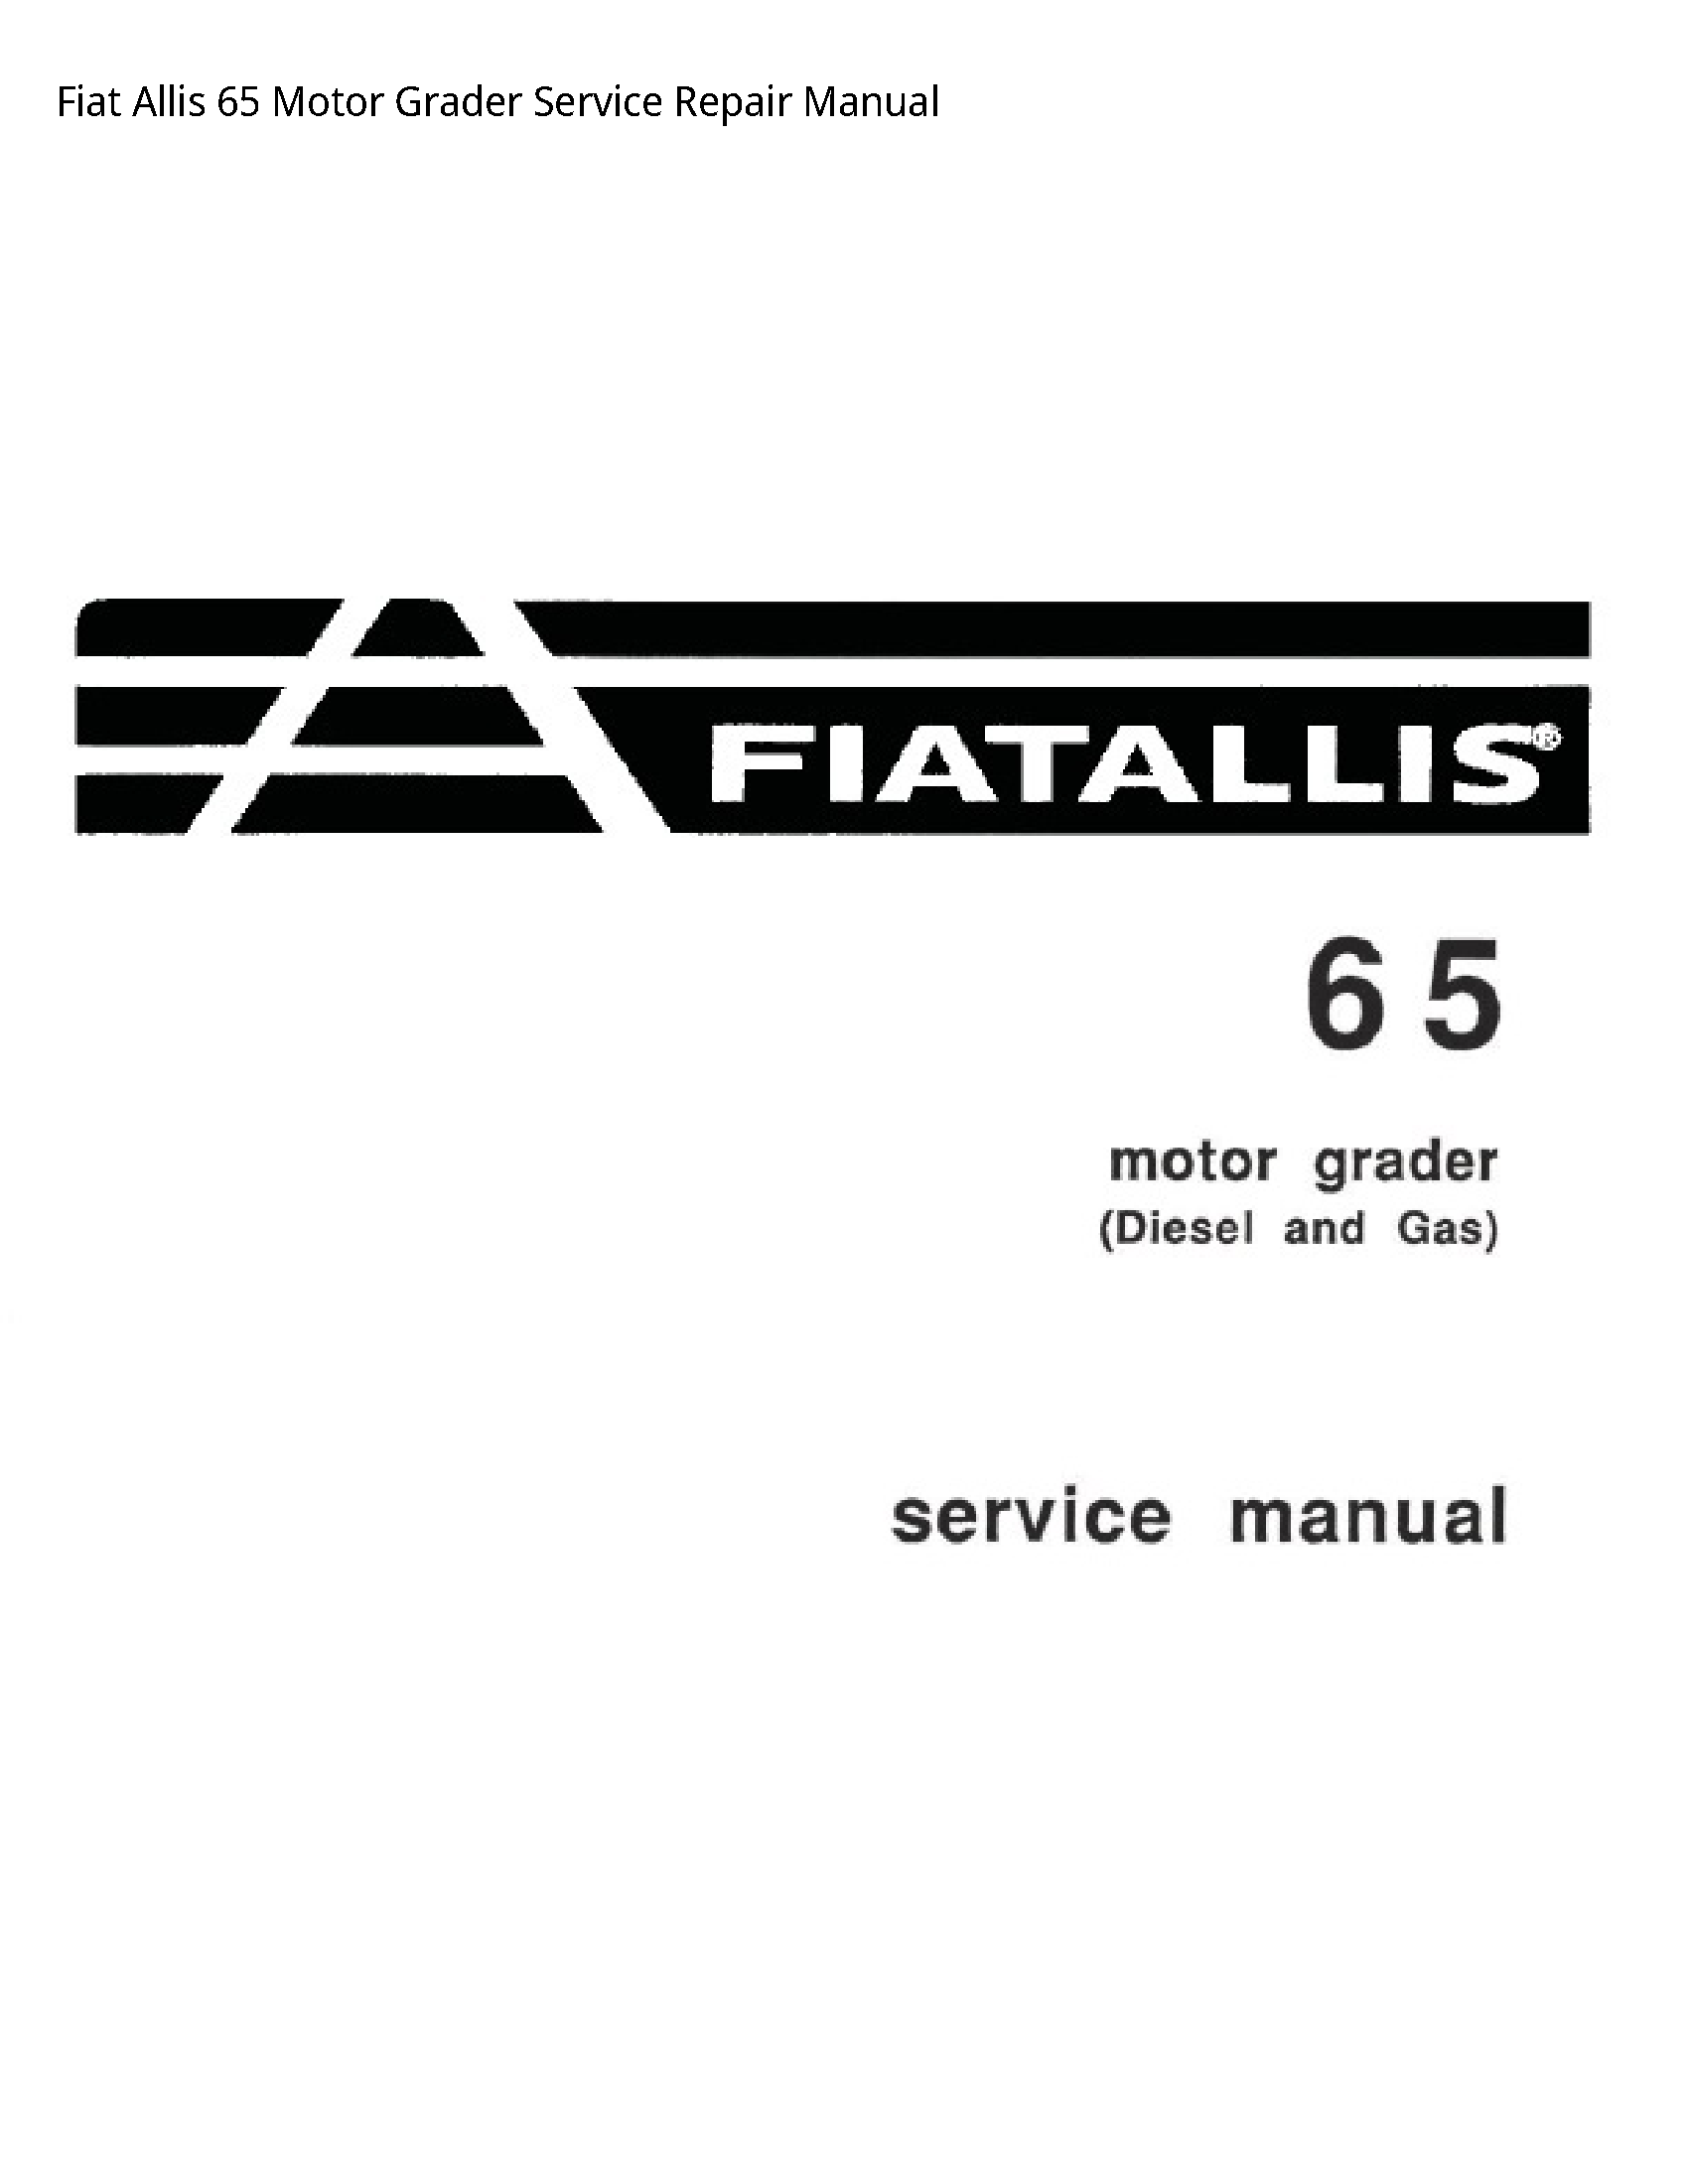 Fiat Allis 65 Motor Grader manual